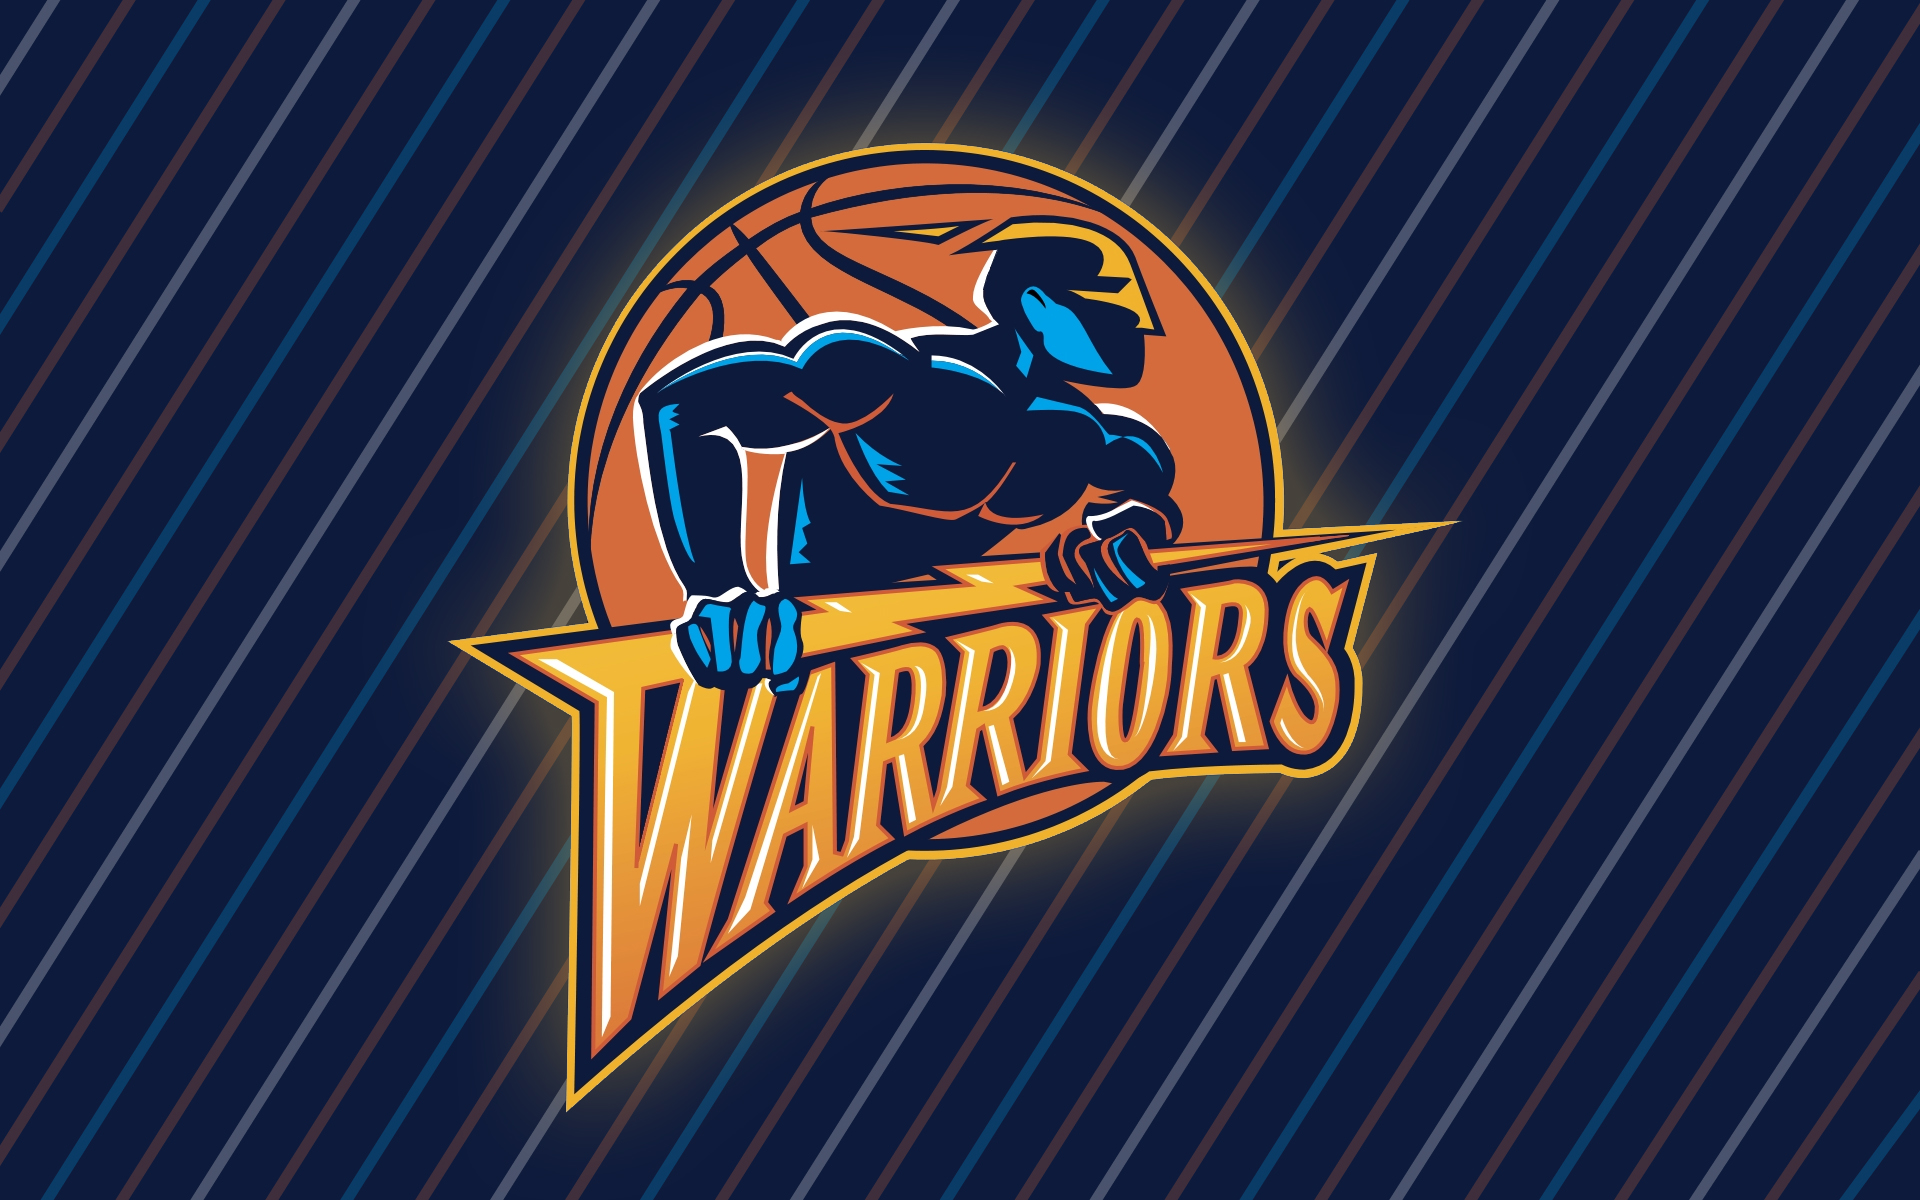 GOLDEN STATE WARRIORS Nba Basketball retro logo Wallpapers HD / Desktop